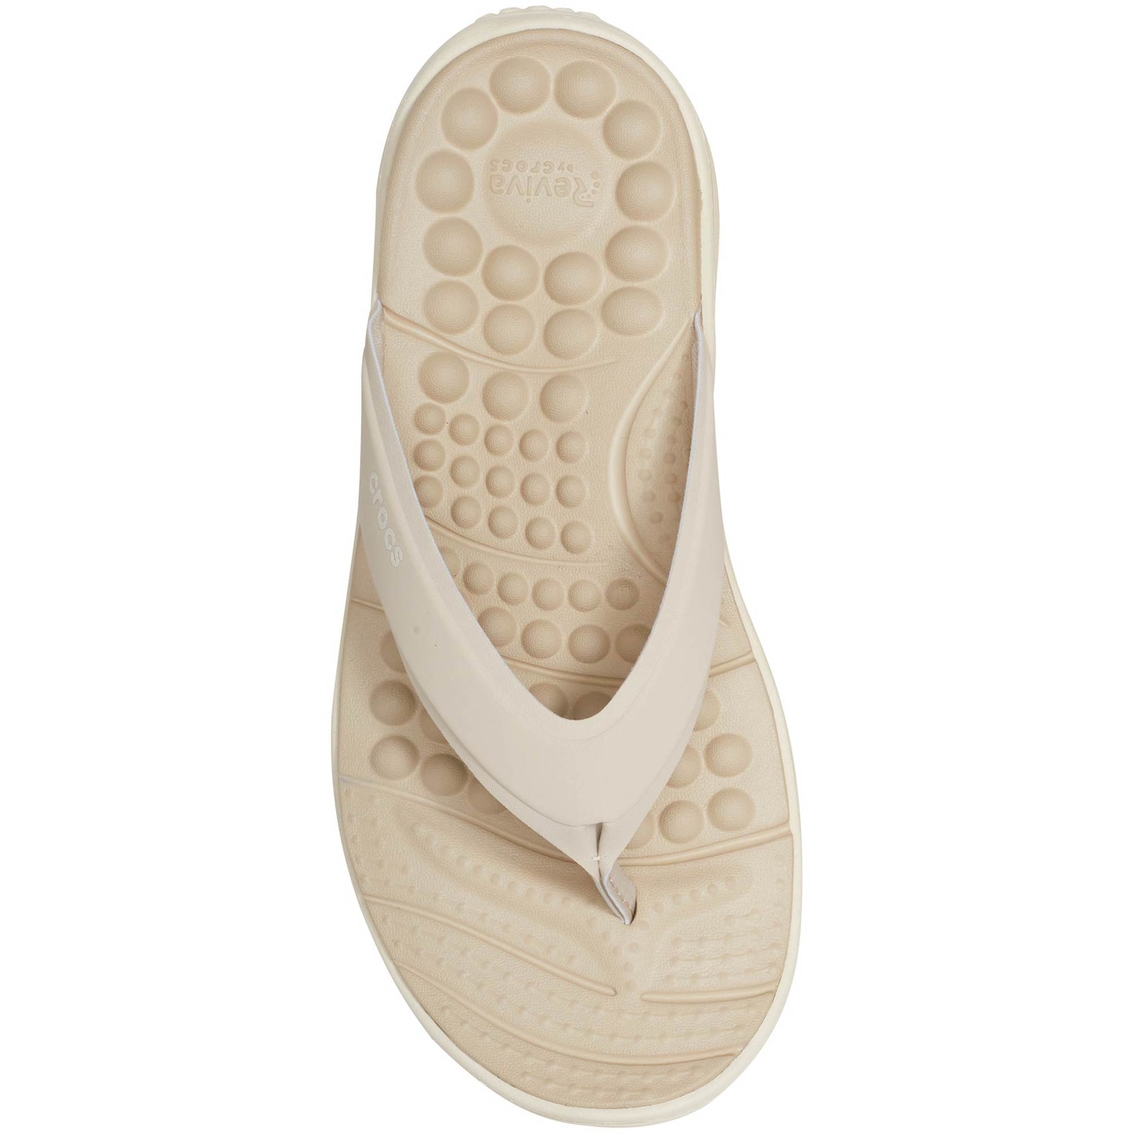 Crocs Women's Reviva Flip Flops - Image 3 of 5